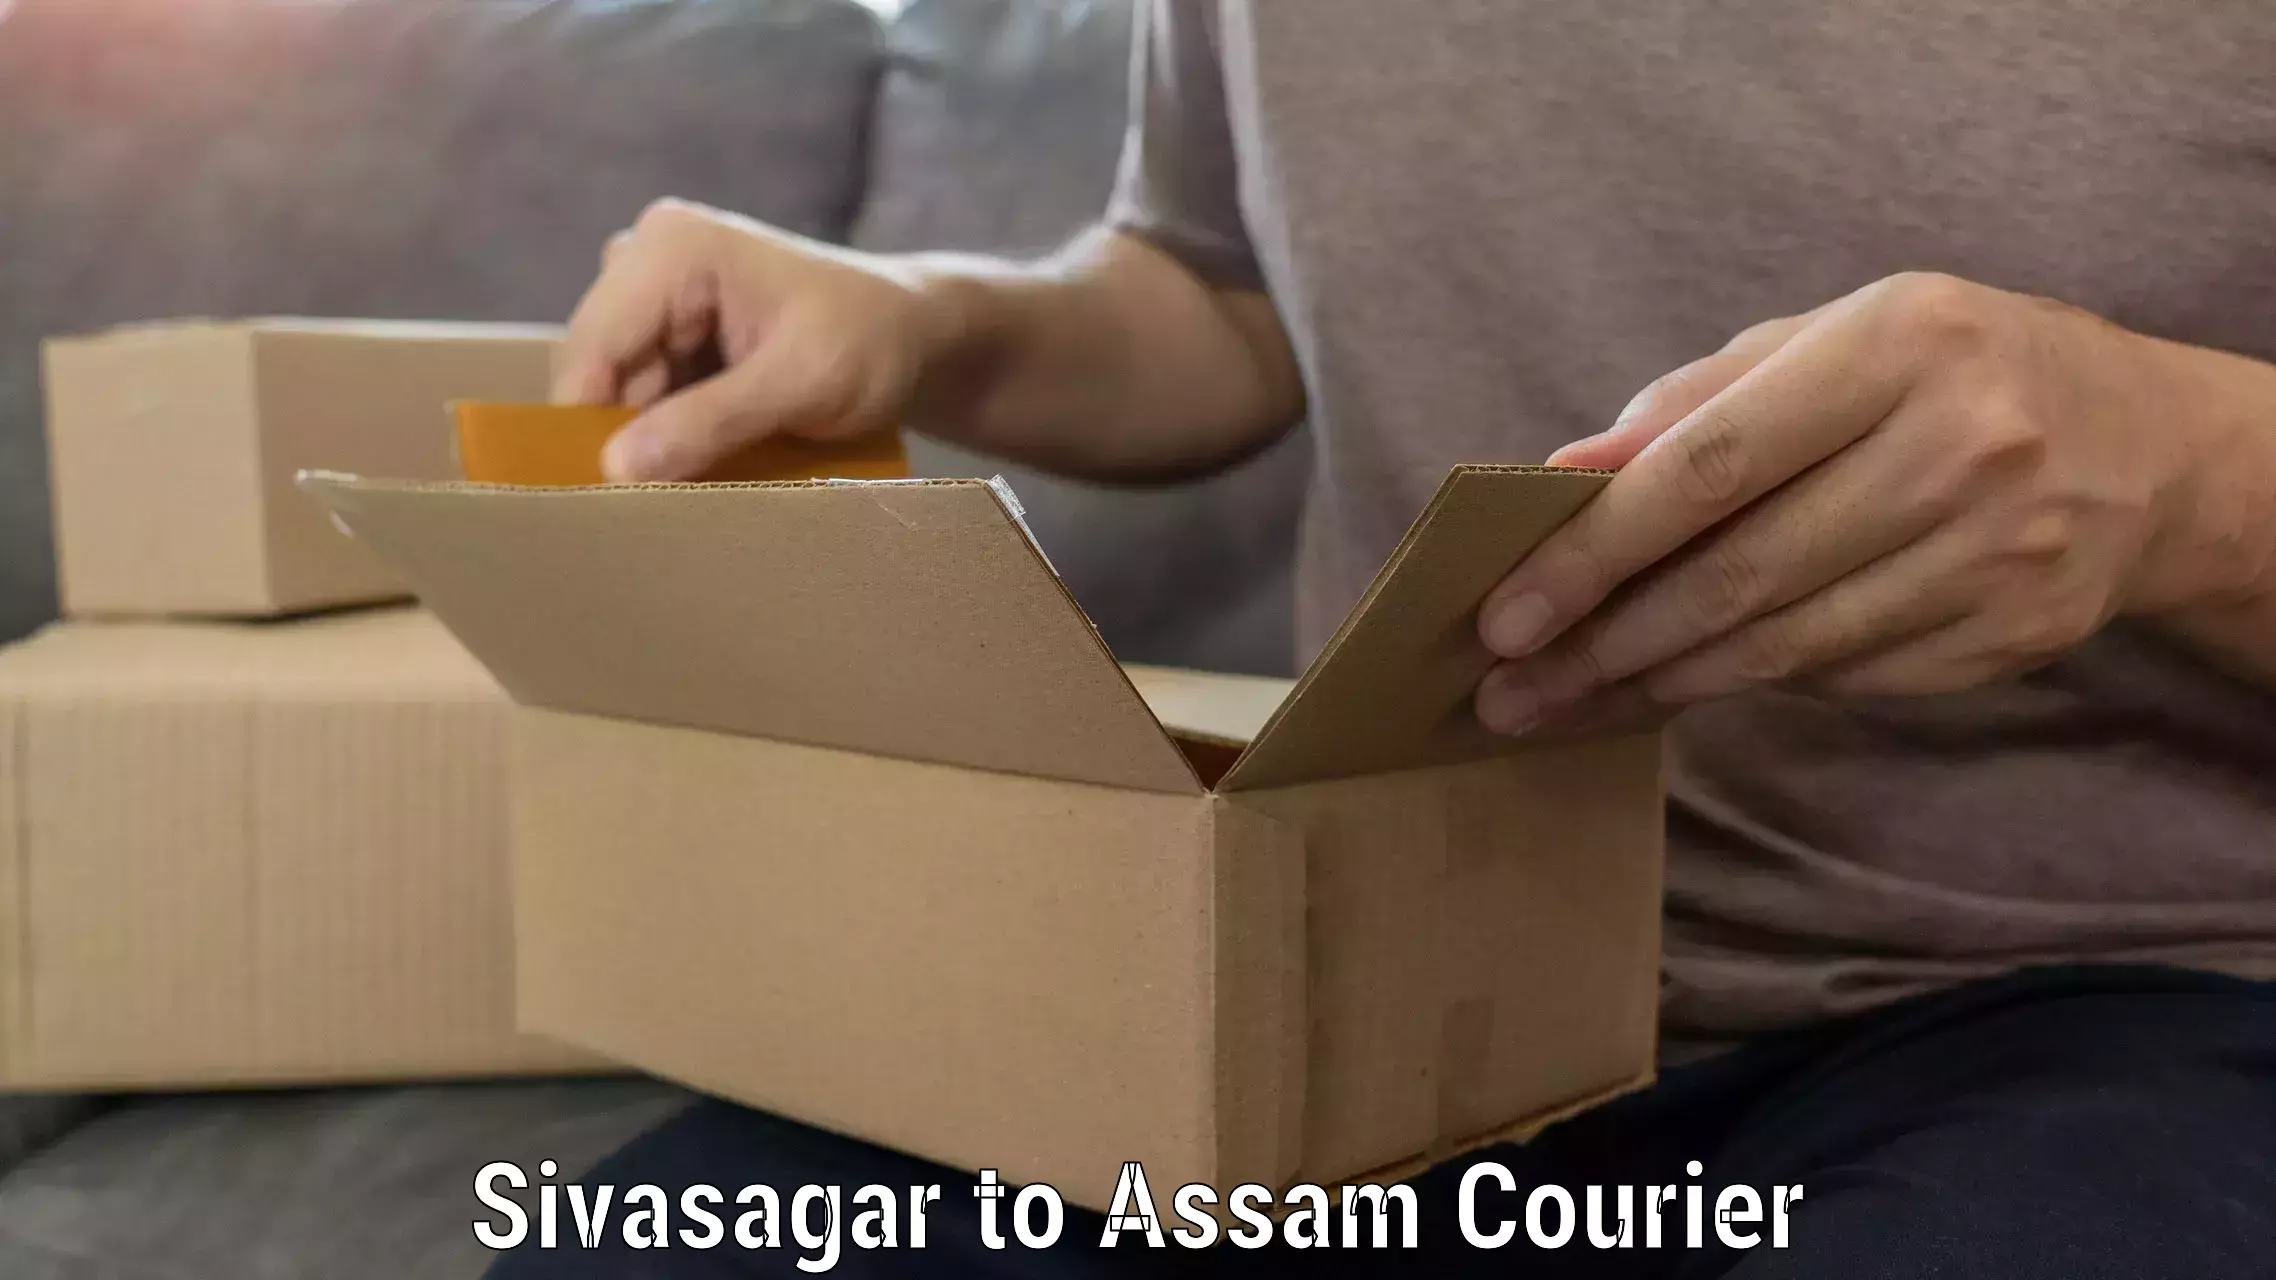 Reliable movers Sivasagar to Rangia